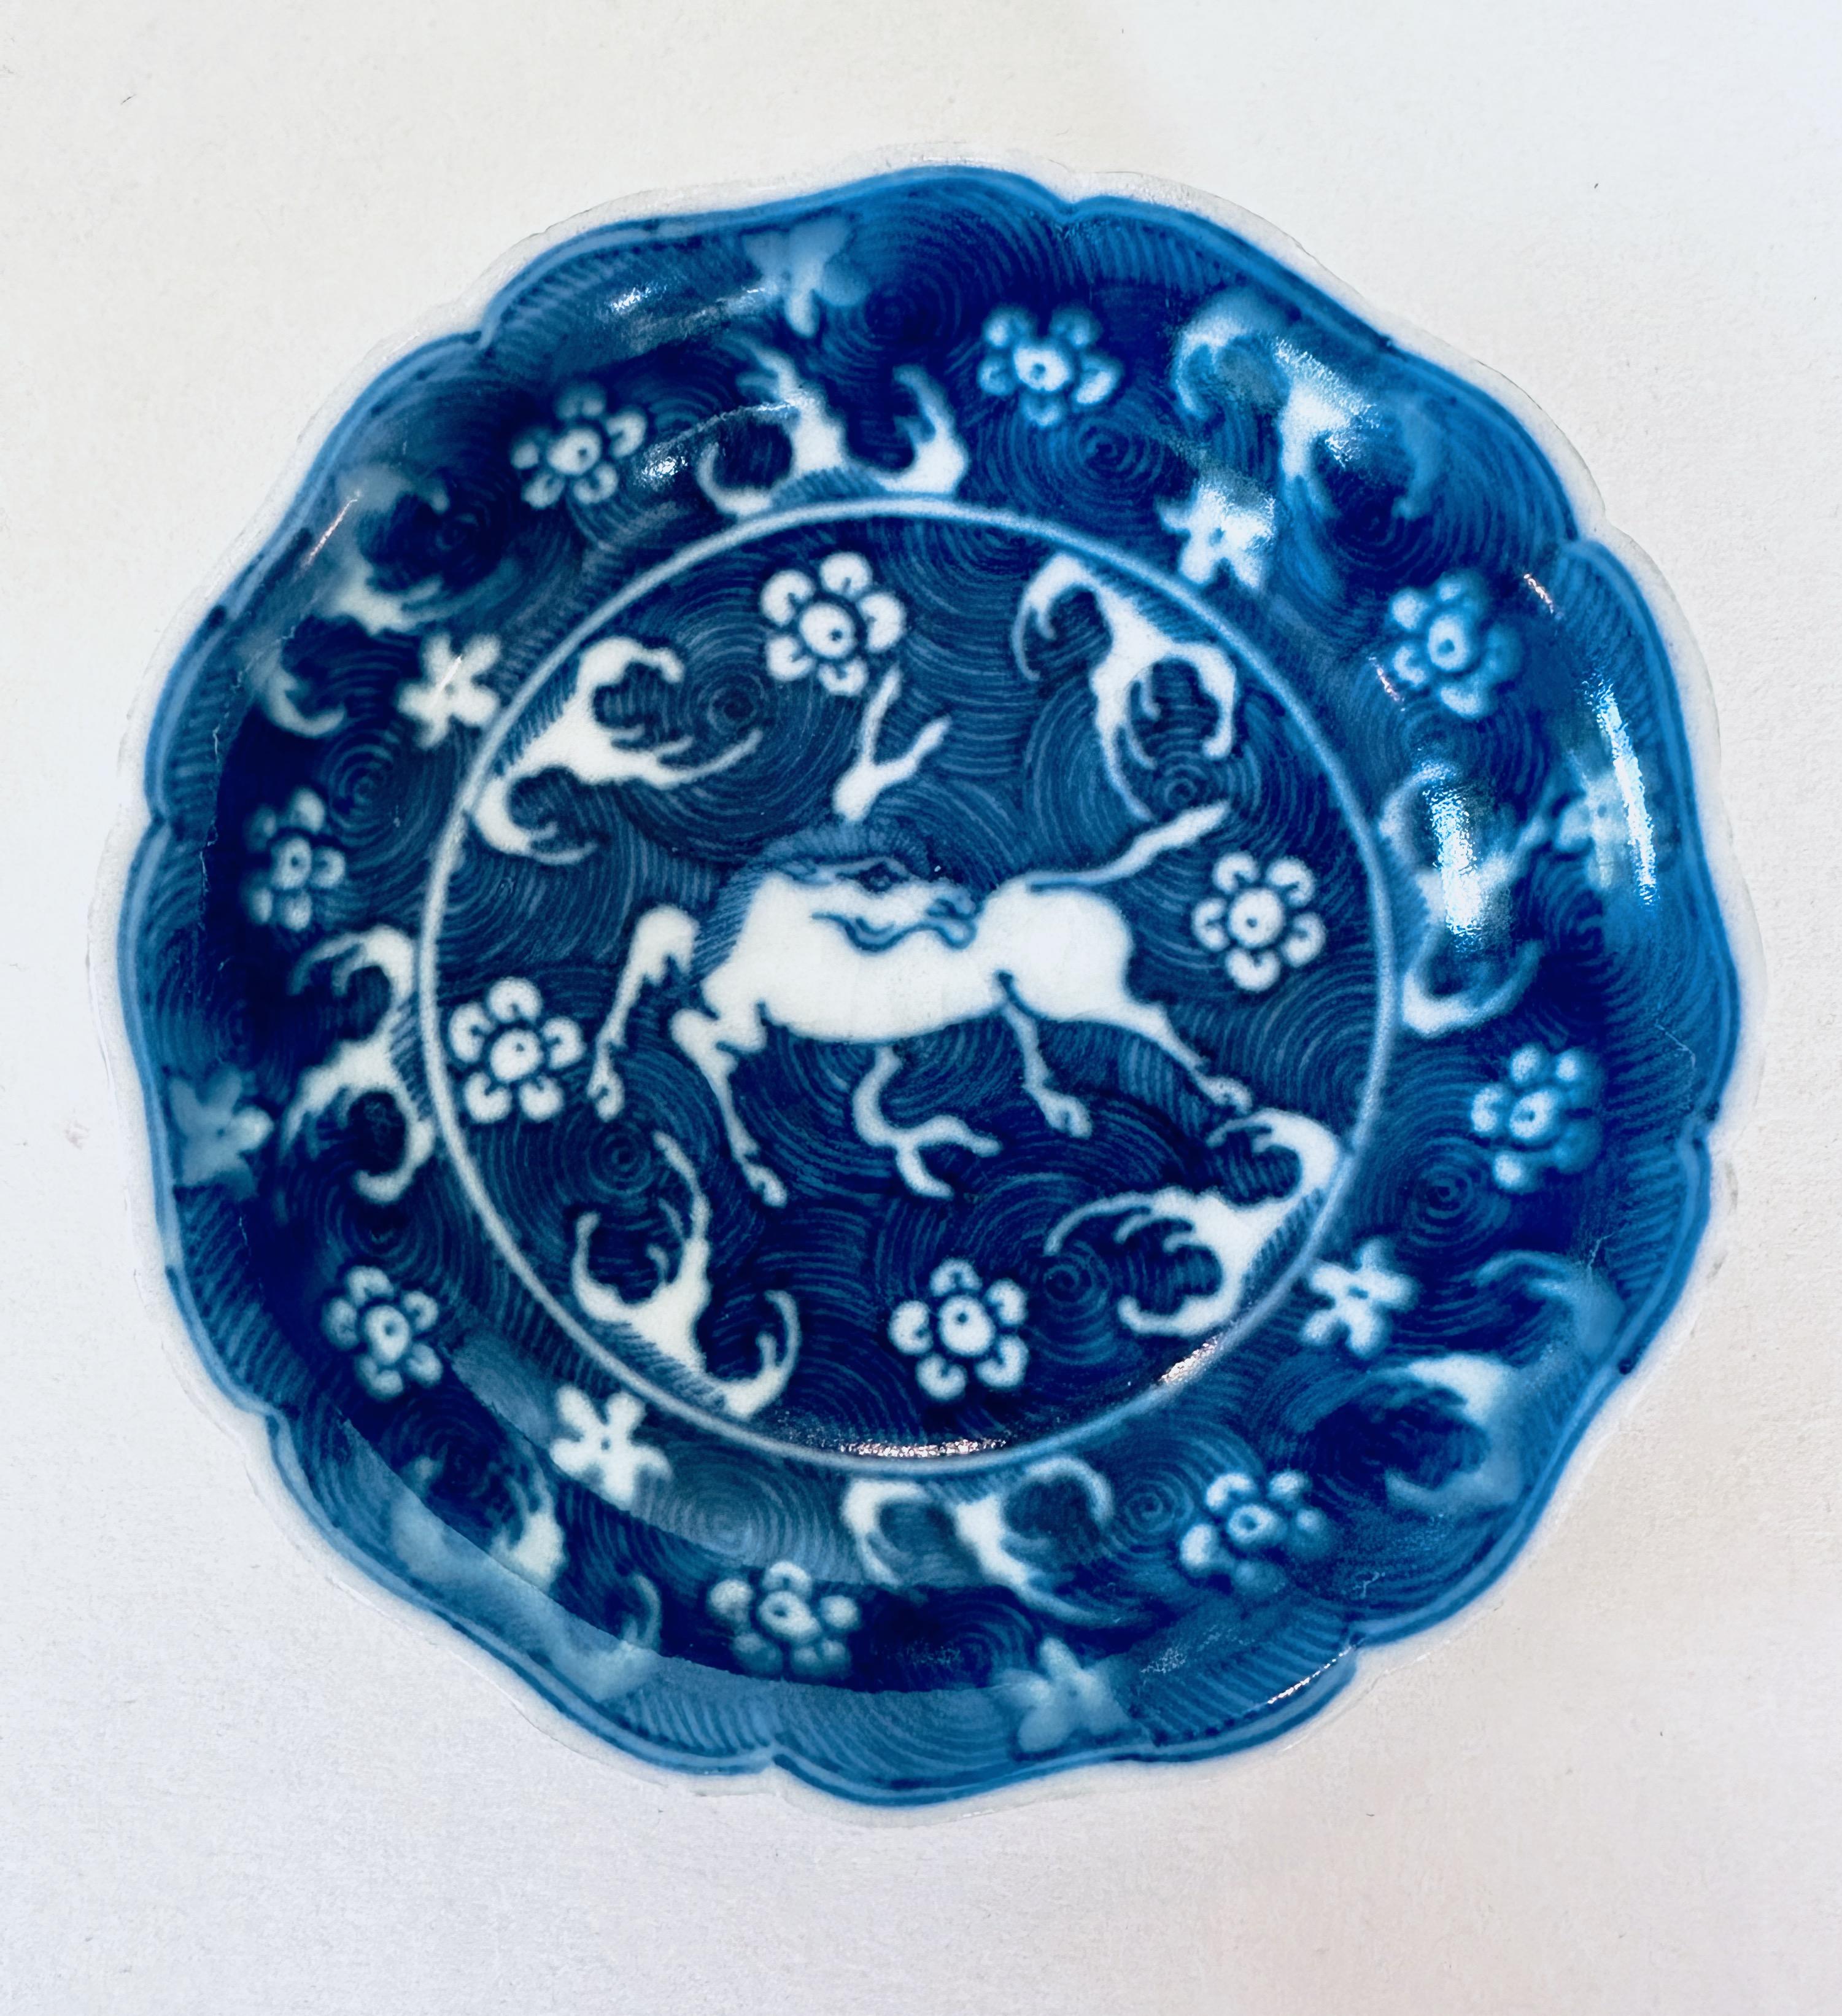 Paire de plats décorés d'un cheval blanc sur fond de spirales bleues, 17e siècle.

Ces plats font partie d'un trésor récupéré par le capitaine Michael Hatcher dans l'épave d'un navire qui a coulé dans la mer de Chine méridionale vers 1643. Environ